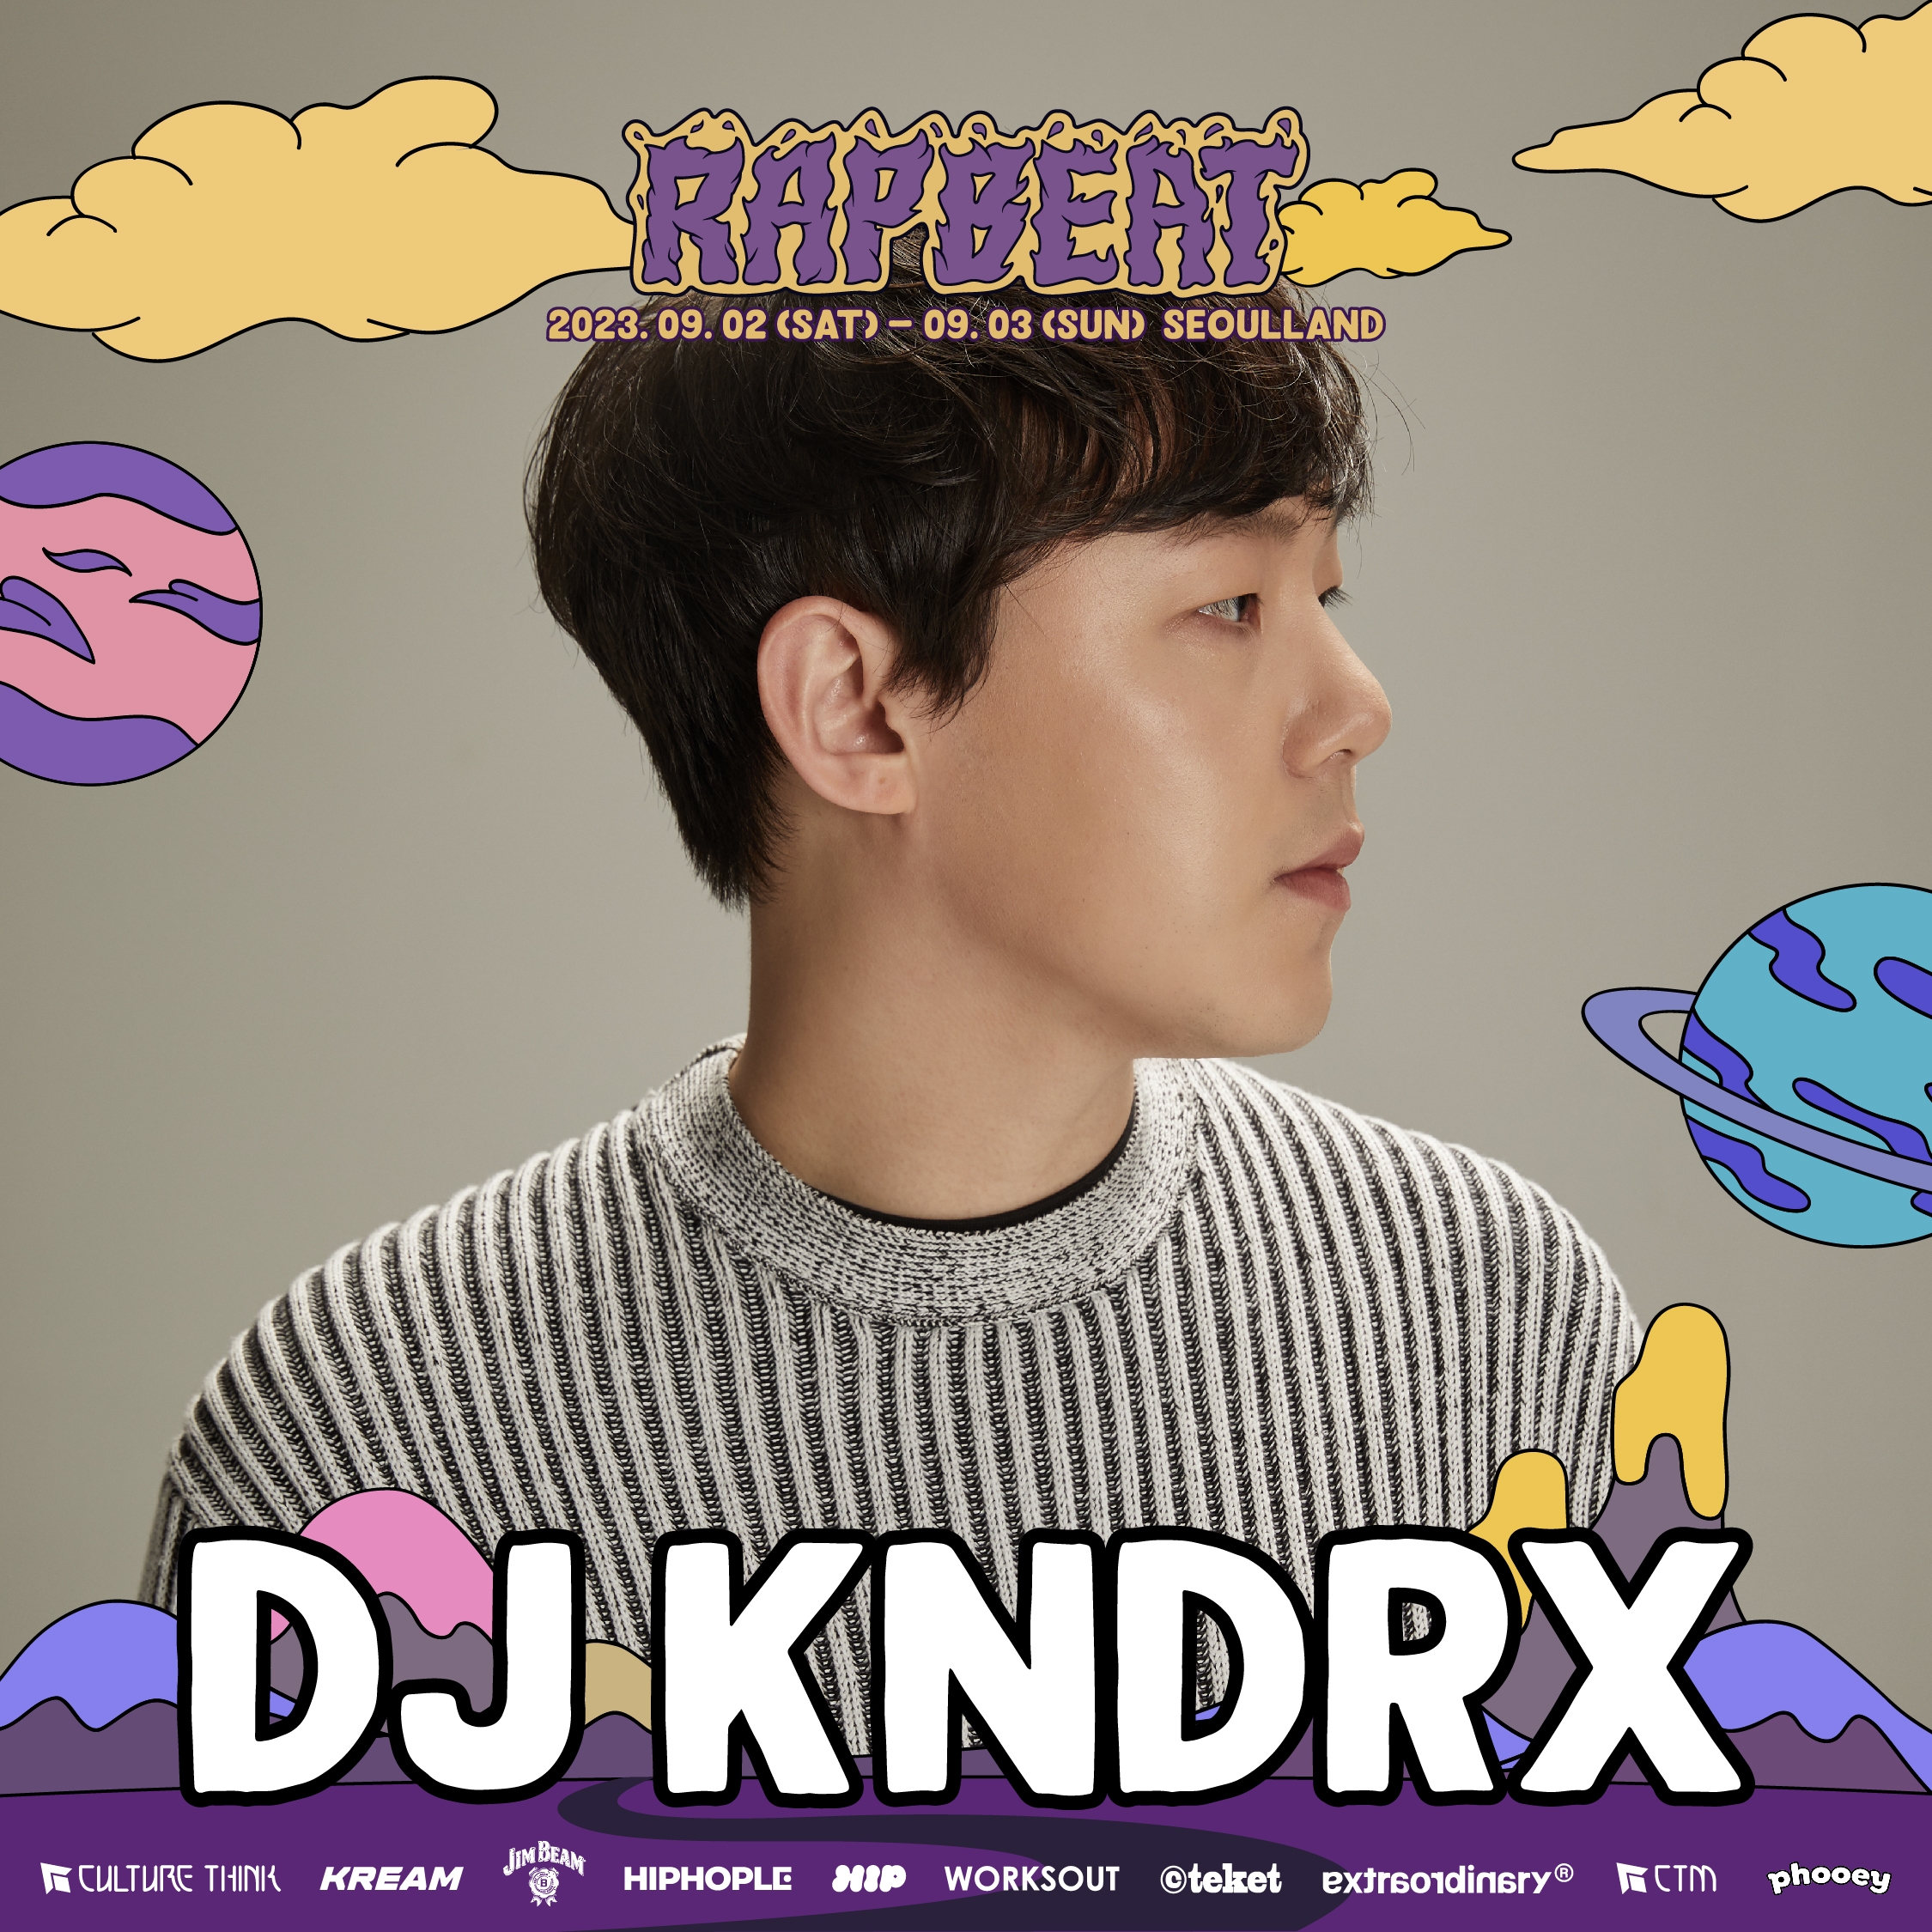 DJ KNDRX